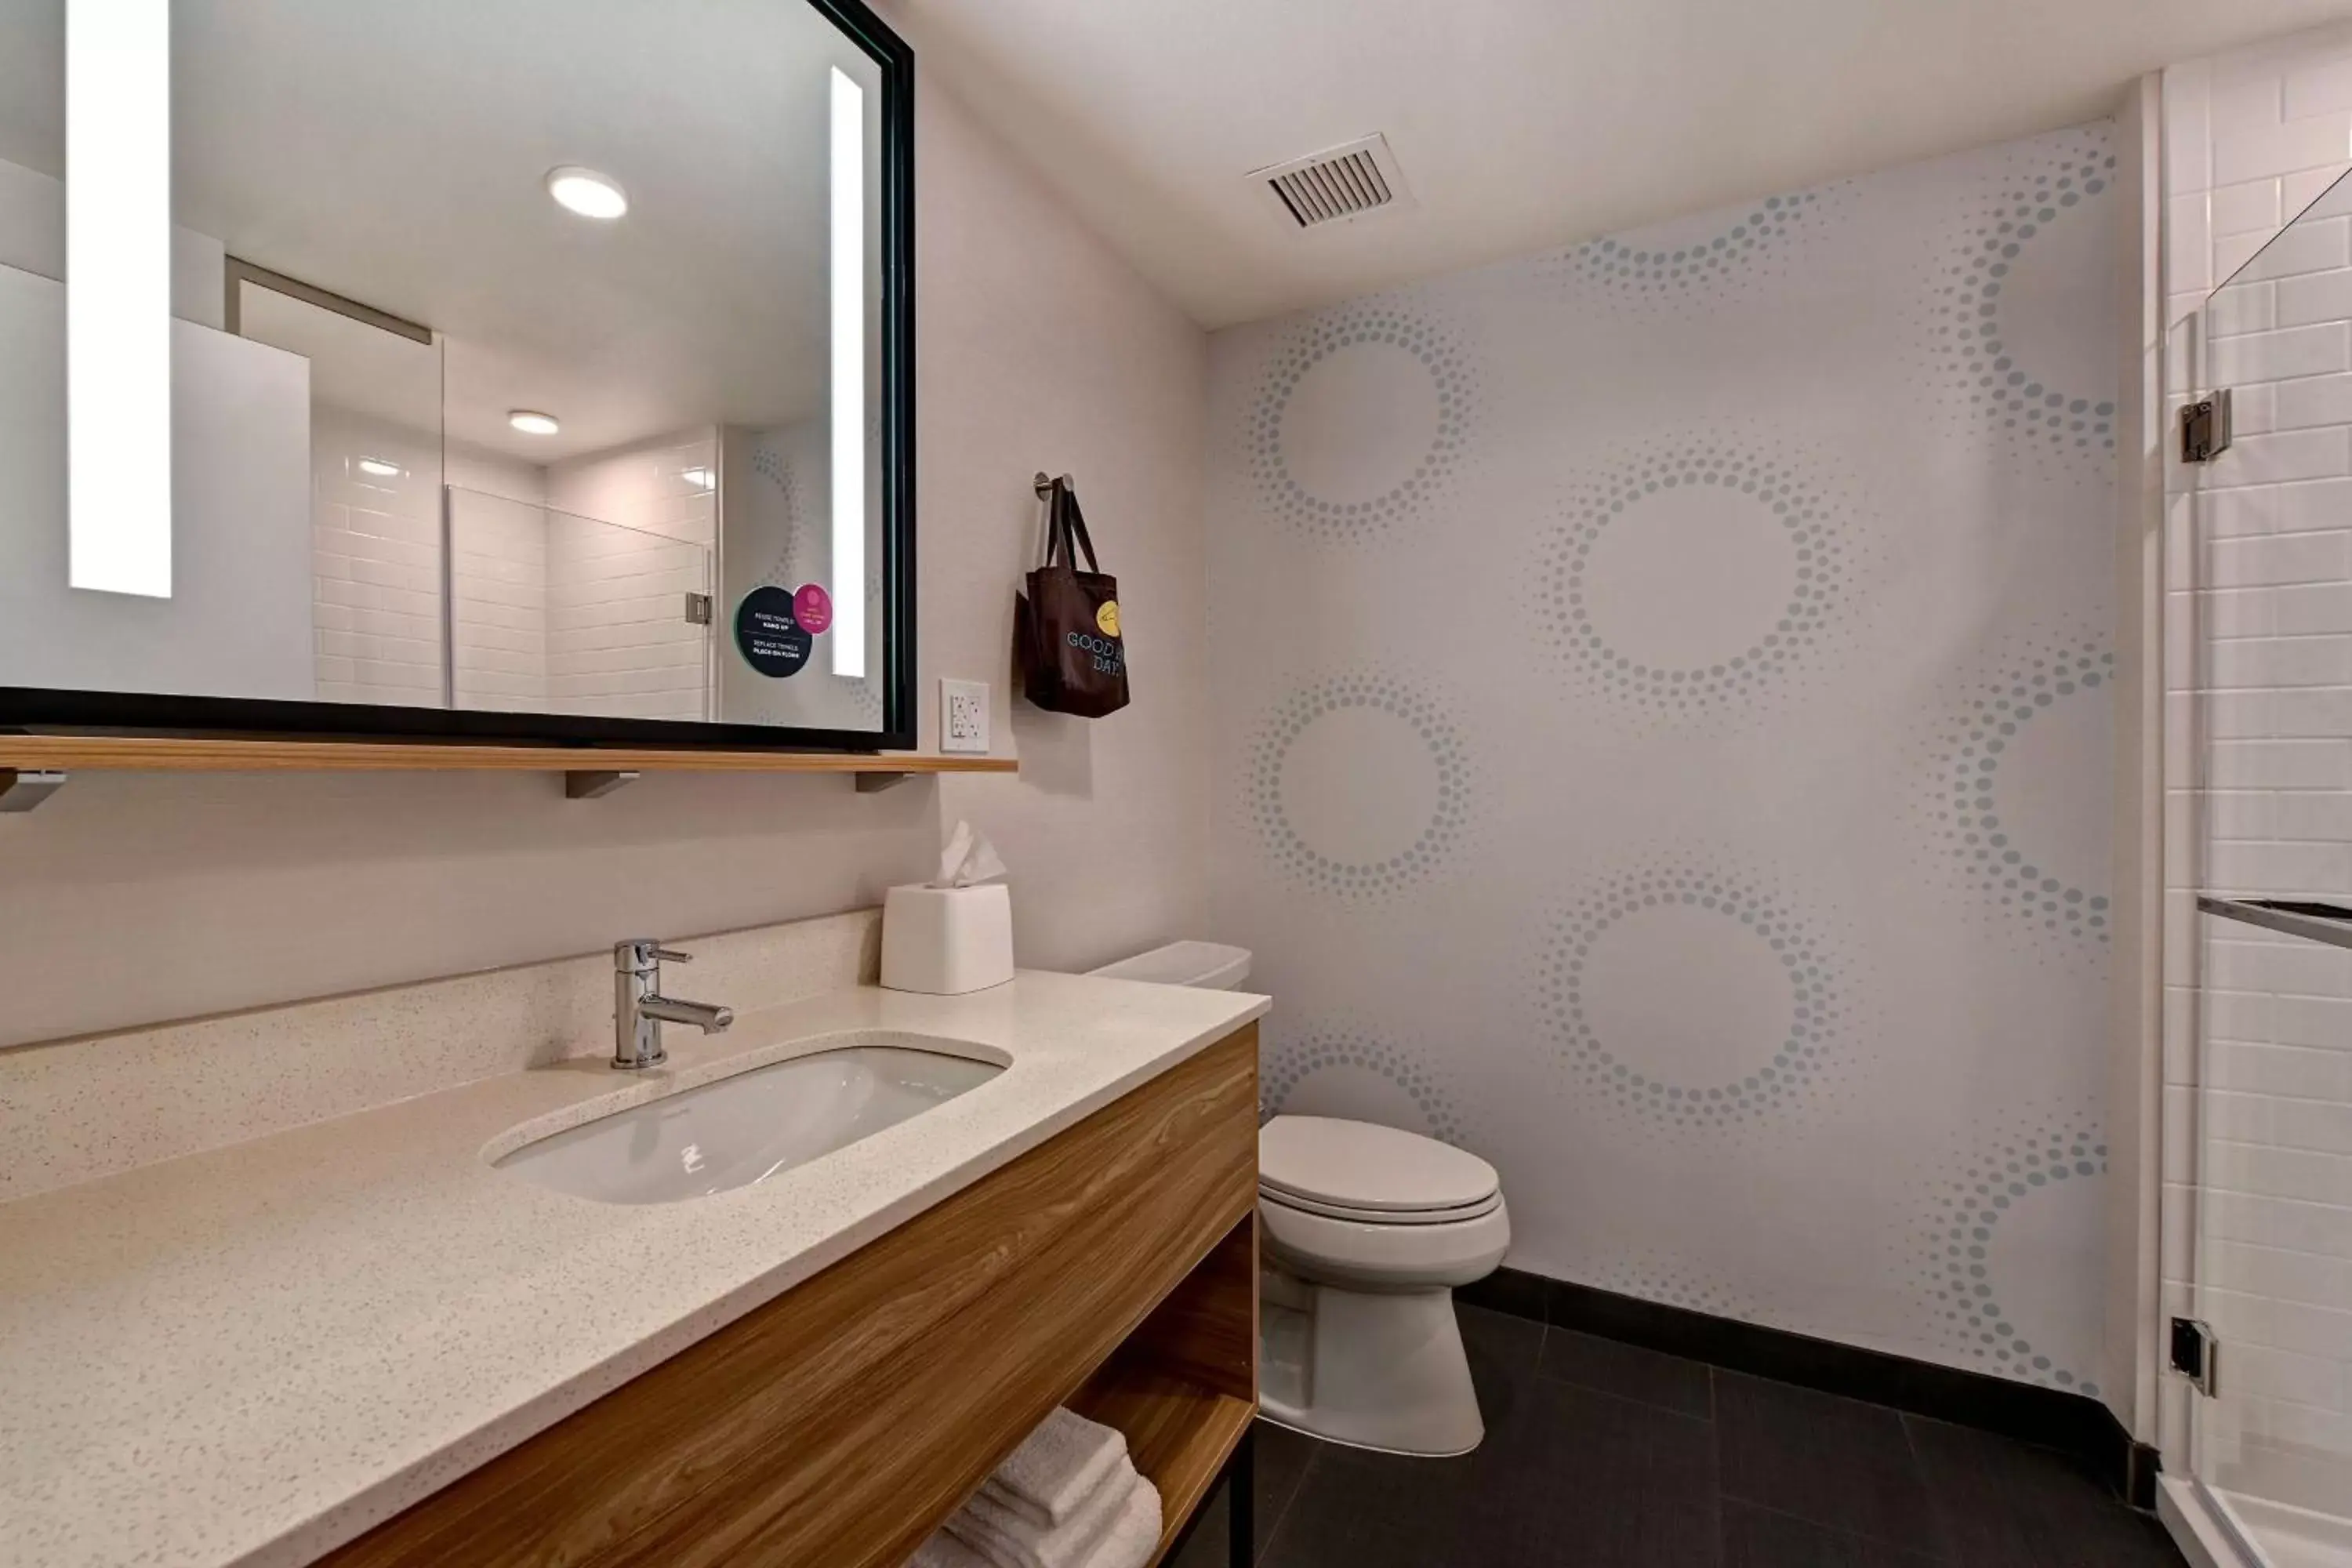 Bathroom in Tru By Hilton Spokane Valley, Wa